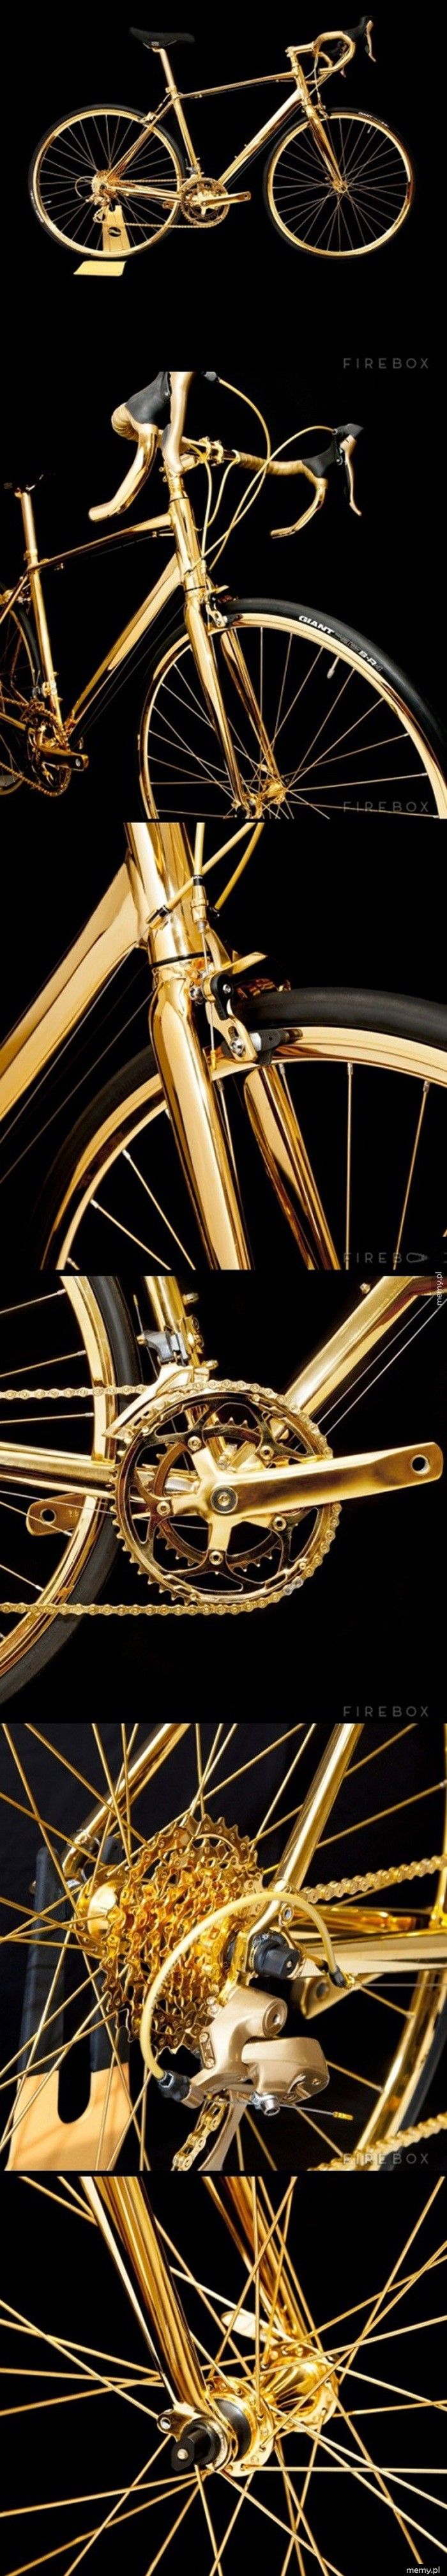 Rower prawie w całości pokryty 24-karatowym złotem. Kosztuje 250.000 dolarów